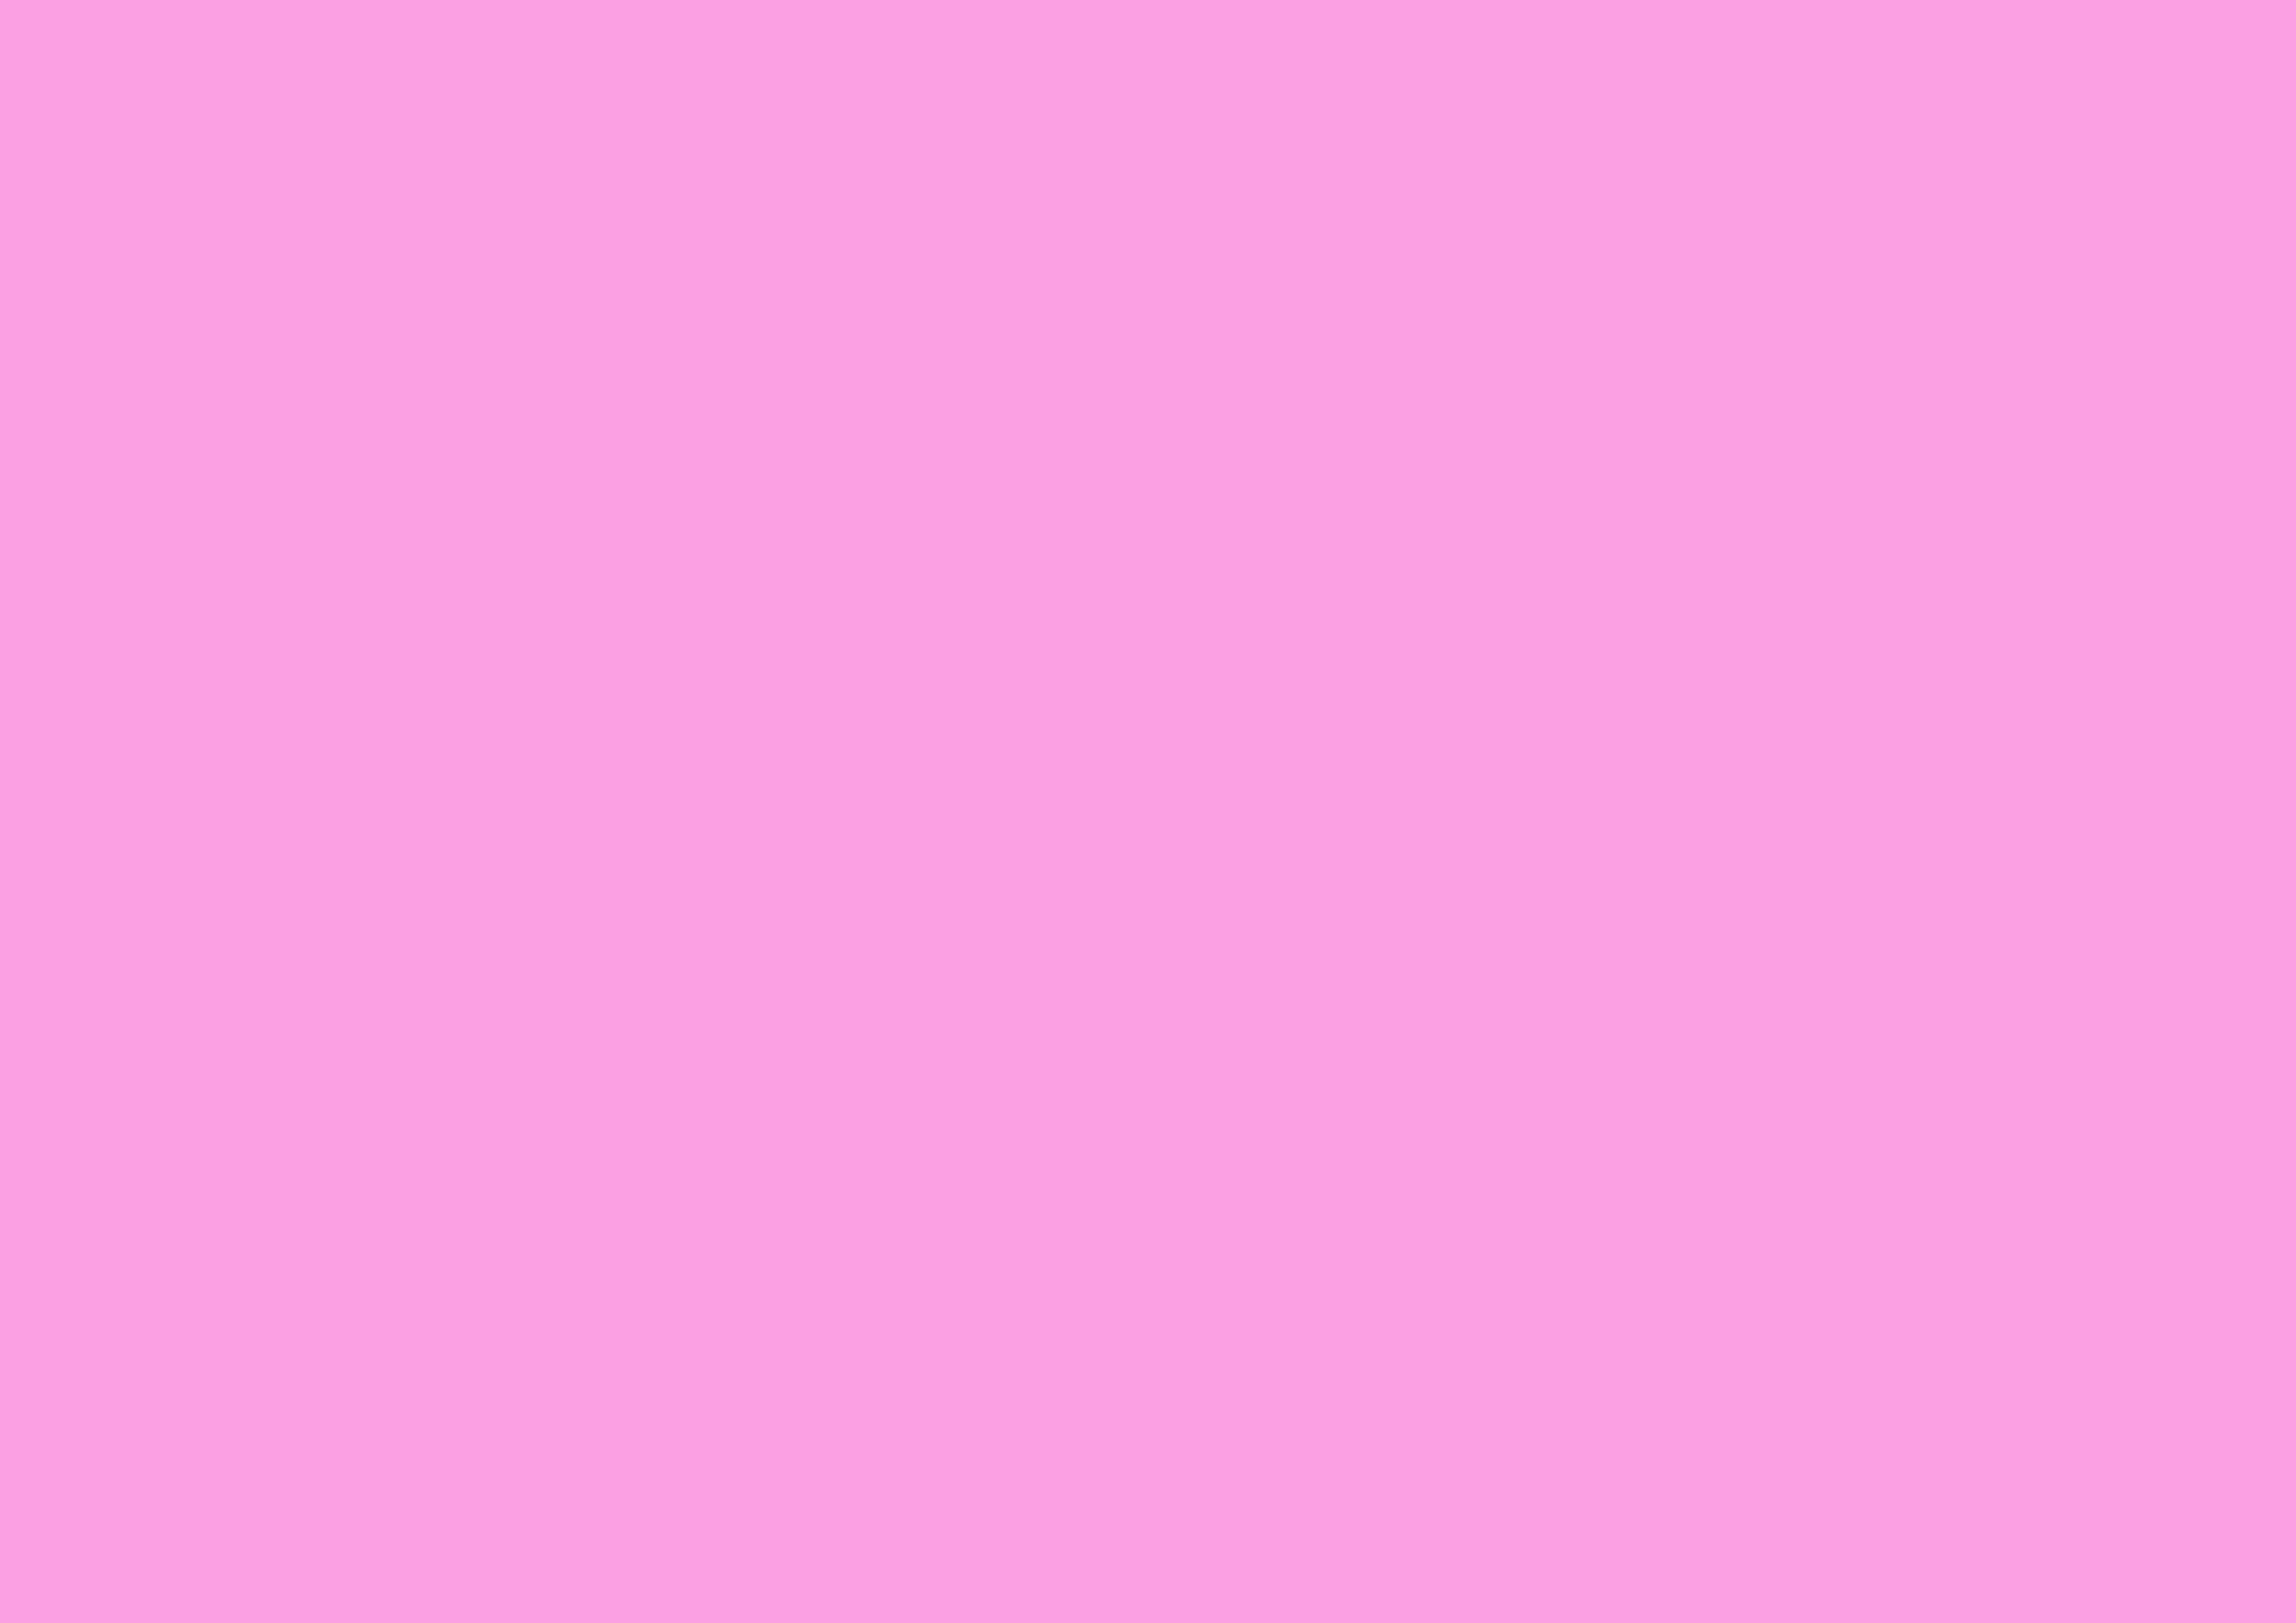 3508x2480 Lavender Rose Solid Color Background